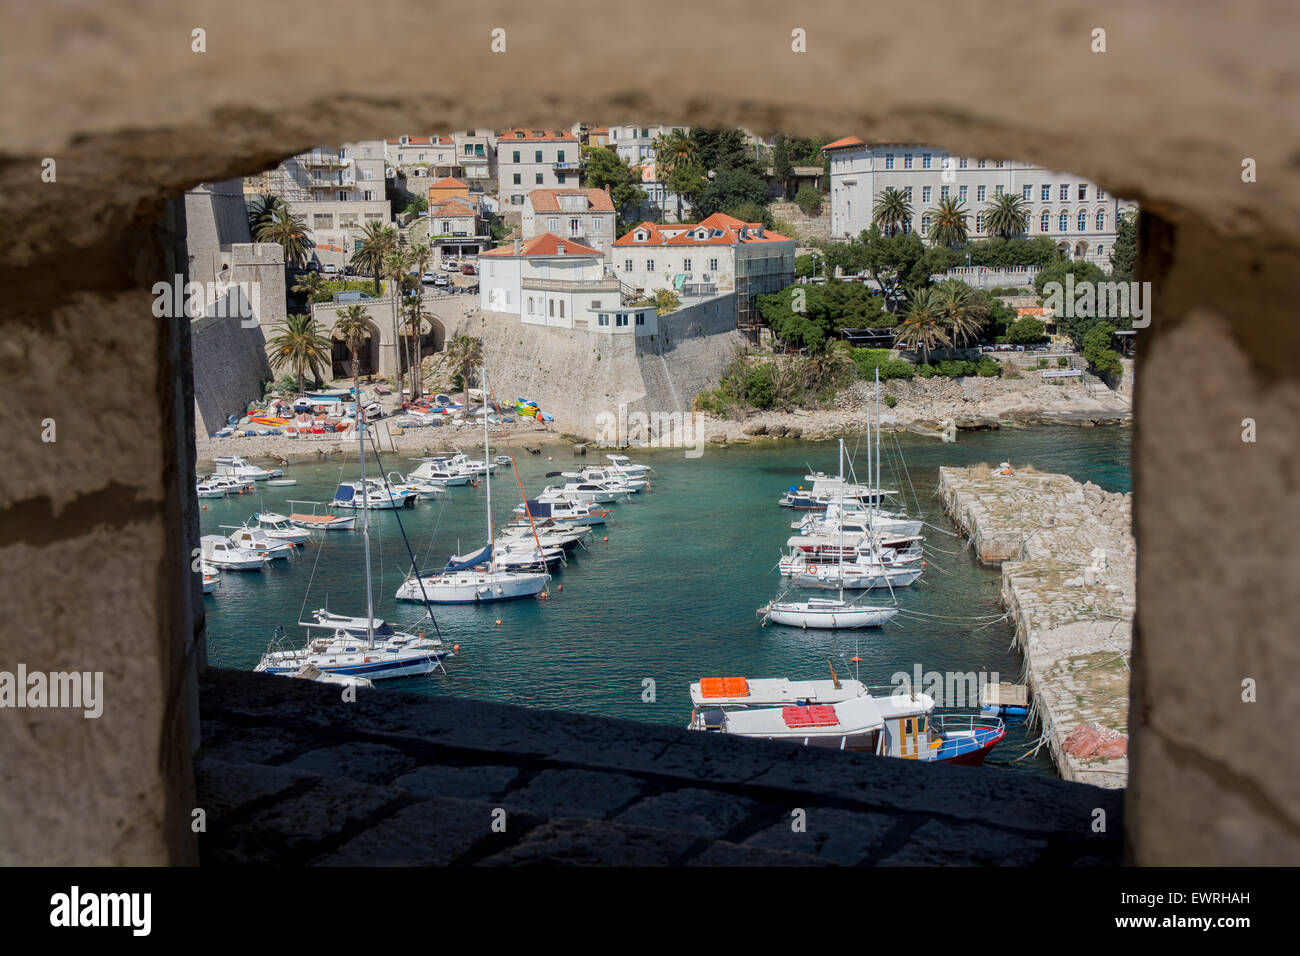 Vieux port de la ville de mur, Dubrovnik, Croatie Banque D'Images